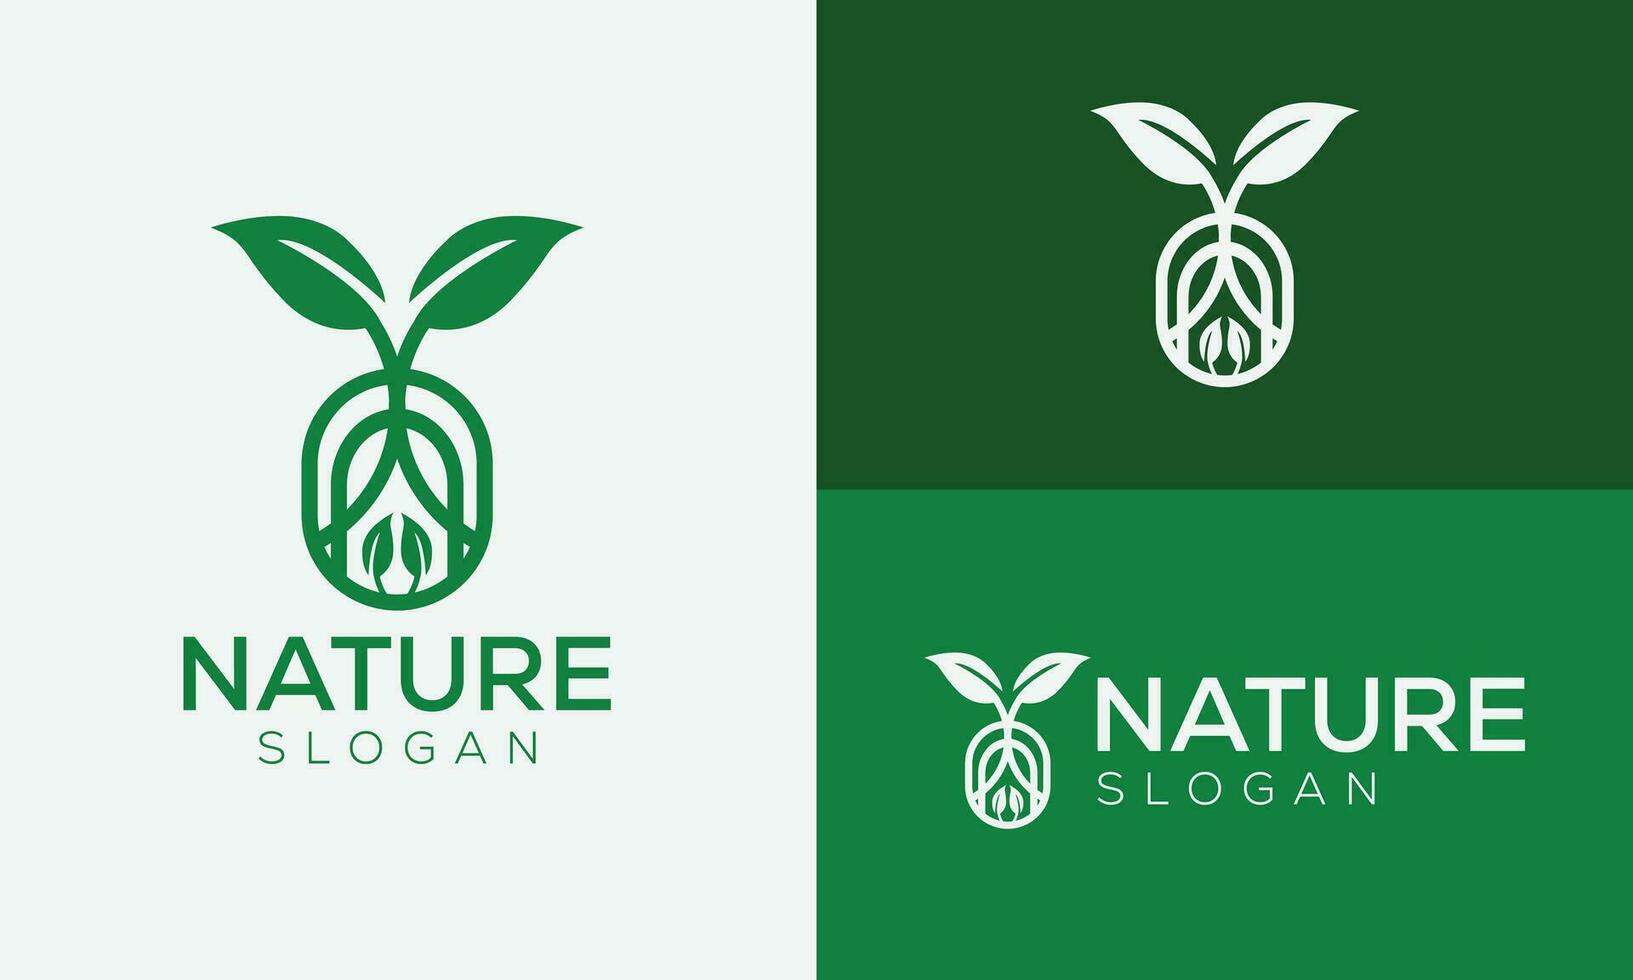 Créatif magnifique monde la nature logo conception vecteur